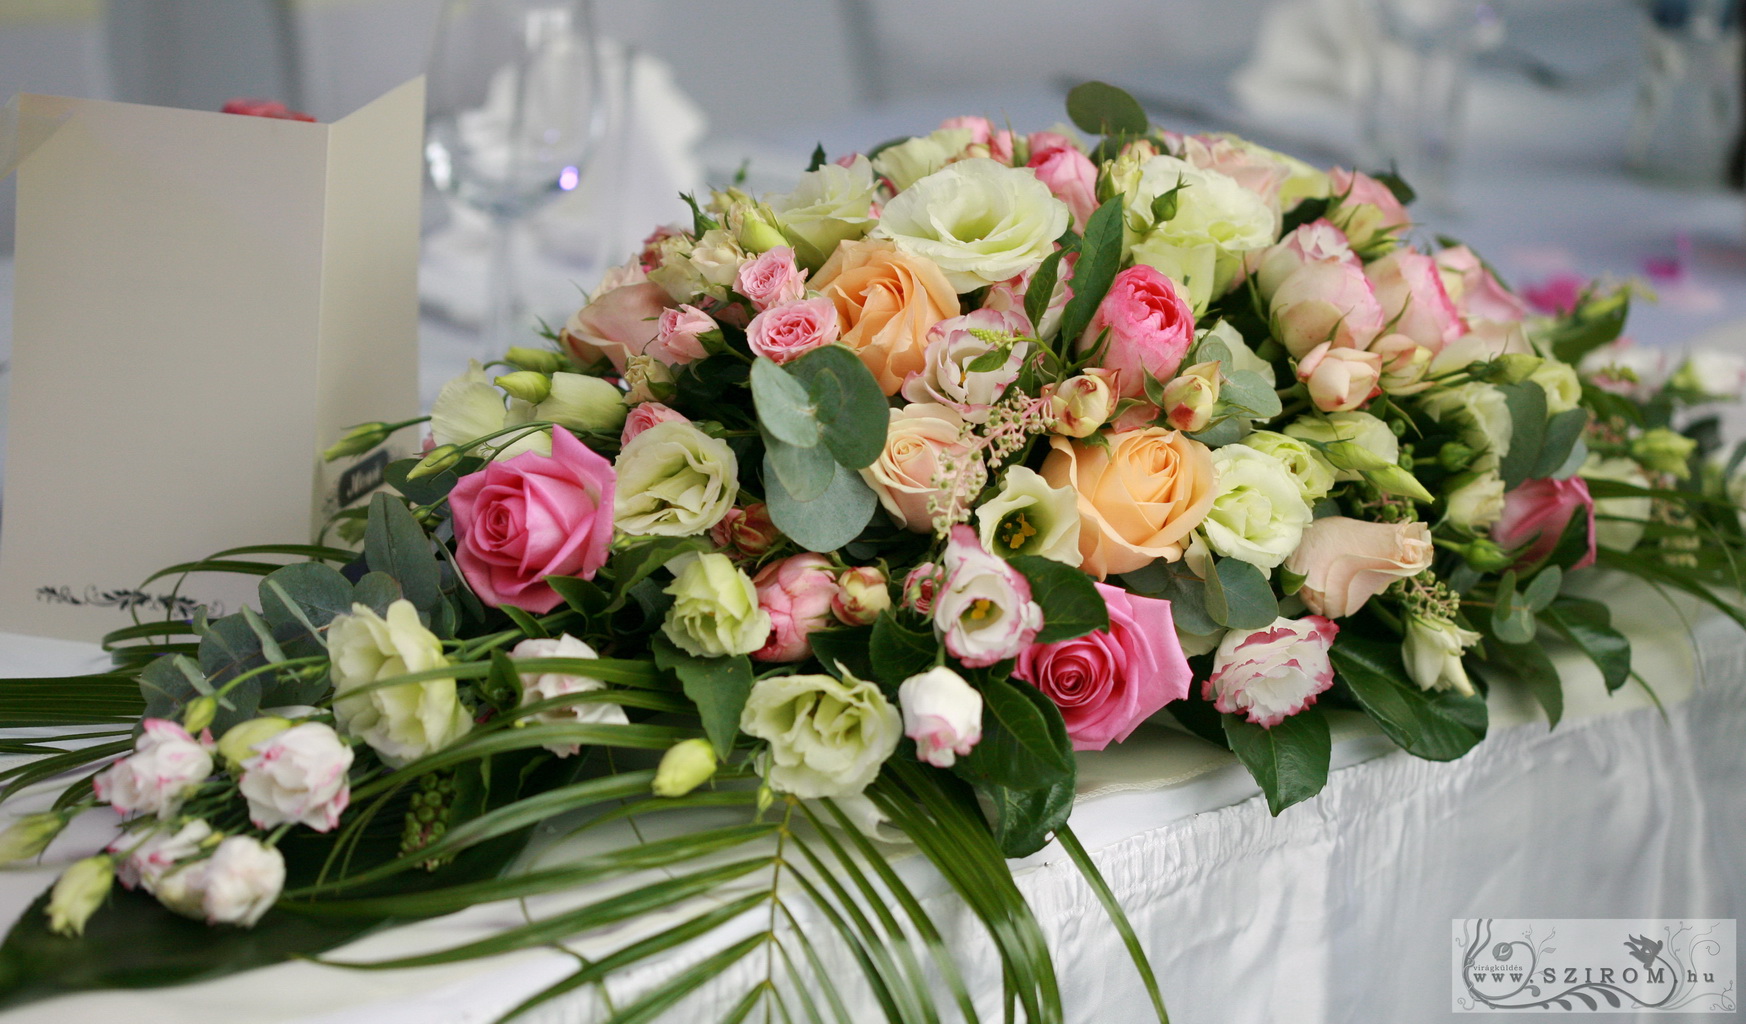 Főasztaldísz sok virággal (angol rózsa, rózsa, liziantusz, bokros rózsa, rózsaszín, barack ) Átrium Caffé Budapest, Kristály ház, esküvő